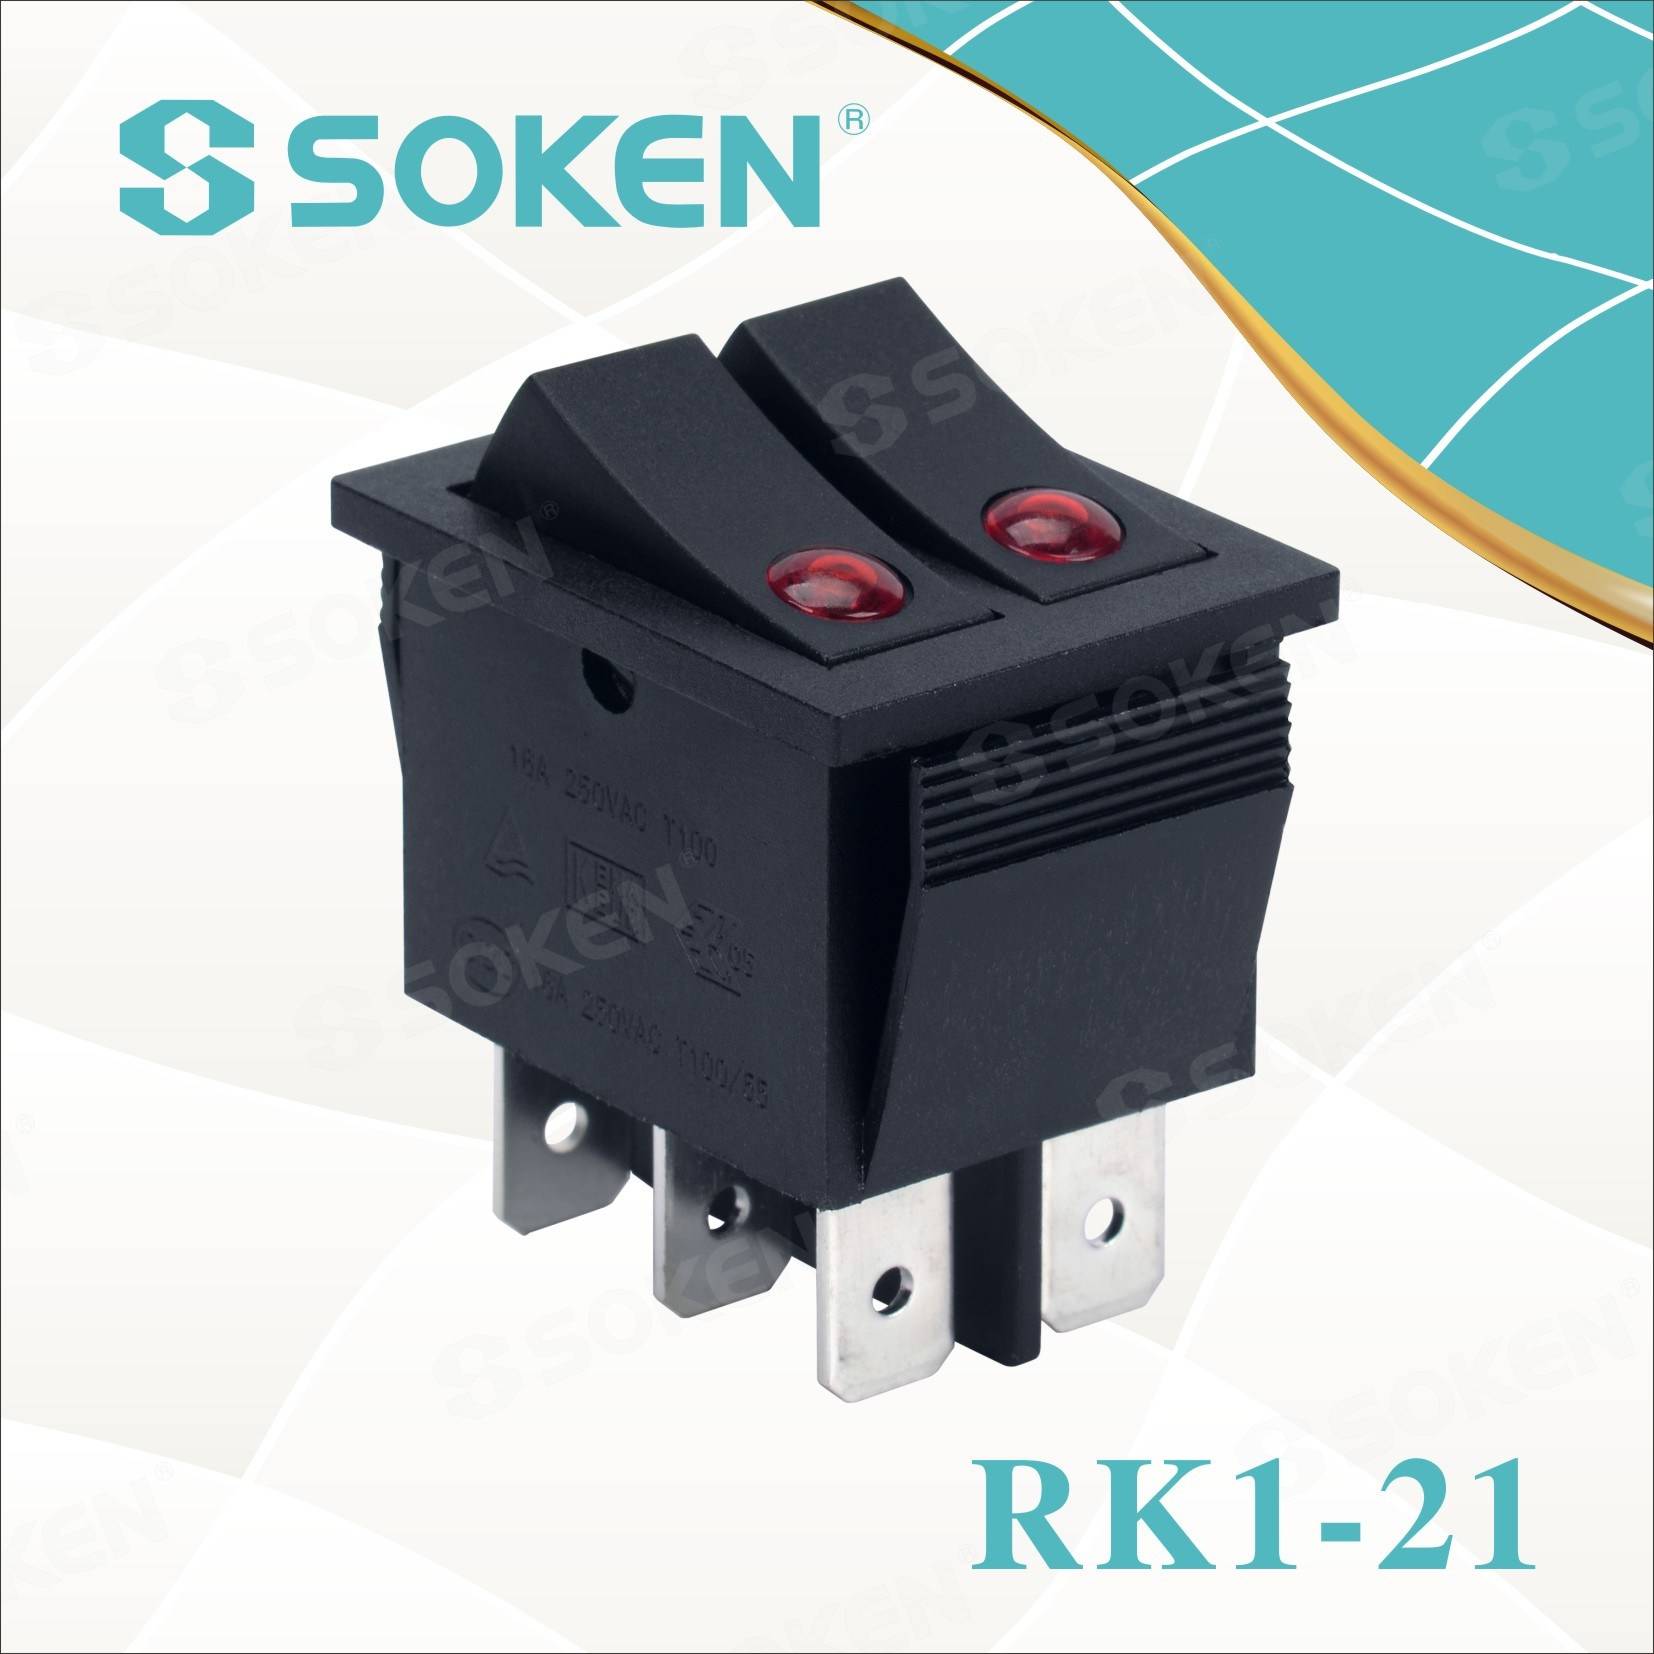 I-Soken Rk1-21 Lens ivaliwe I-Illuminated Double Rocker Switch